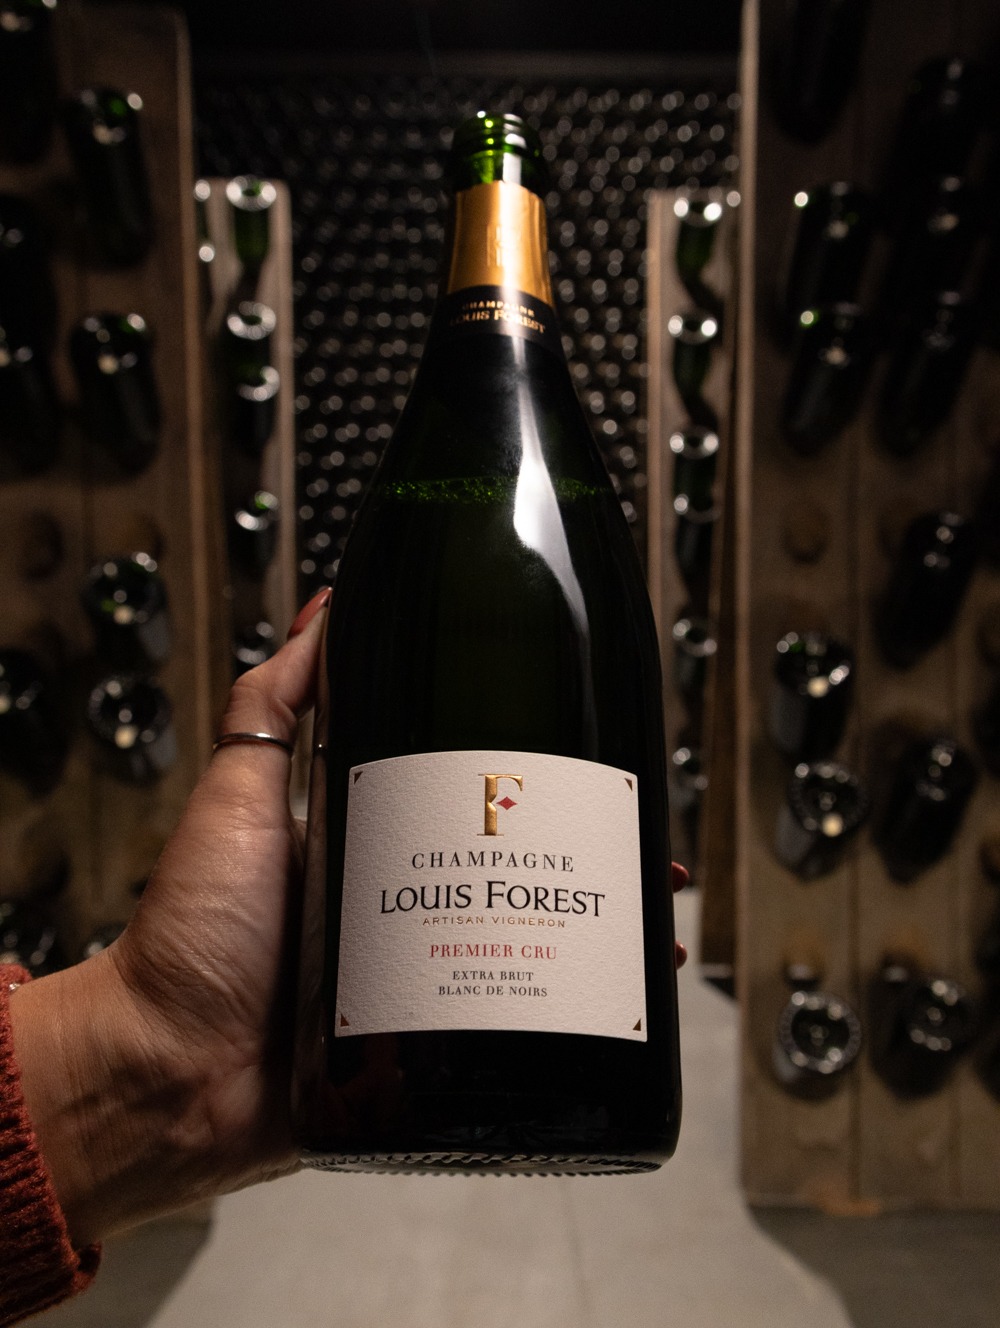 Champagne Louis Forest Blanc de Noirs Extra Brut Premier Cru NV